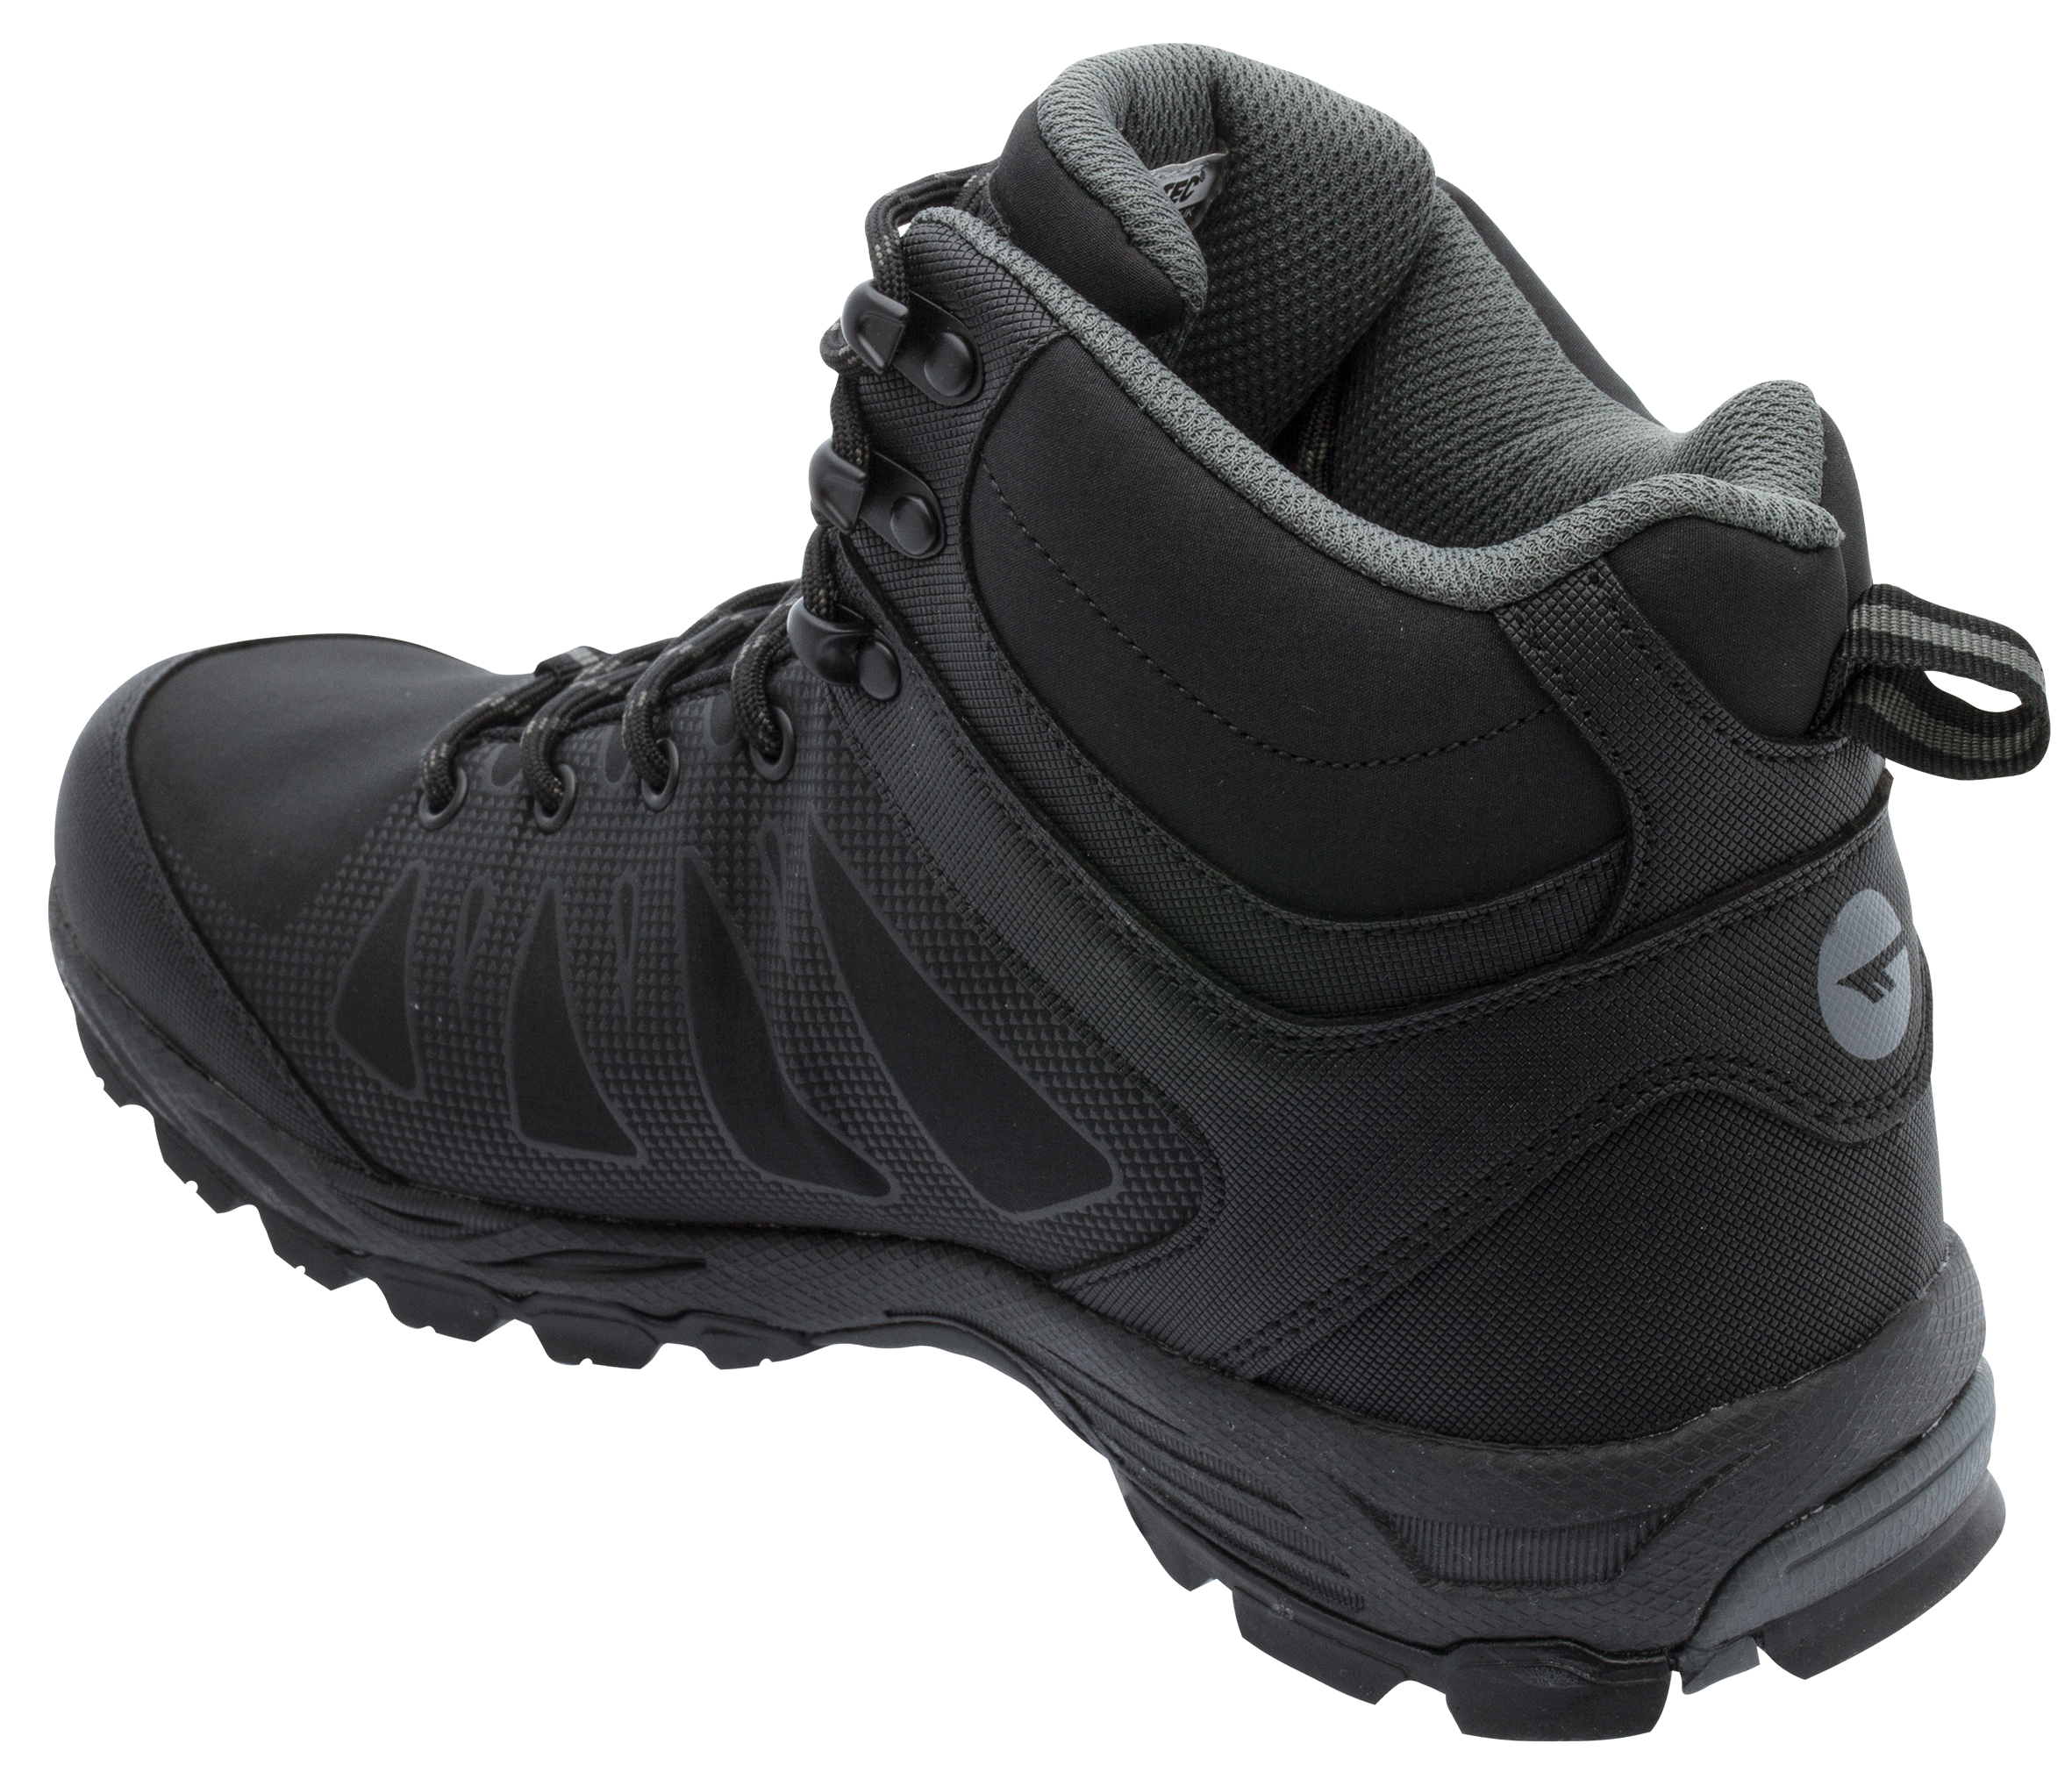 Hi-Tec Raven Mid WP Trekking Boots Black/Charcoal